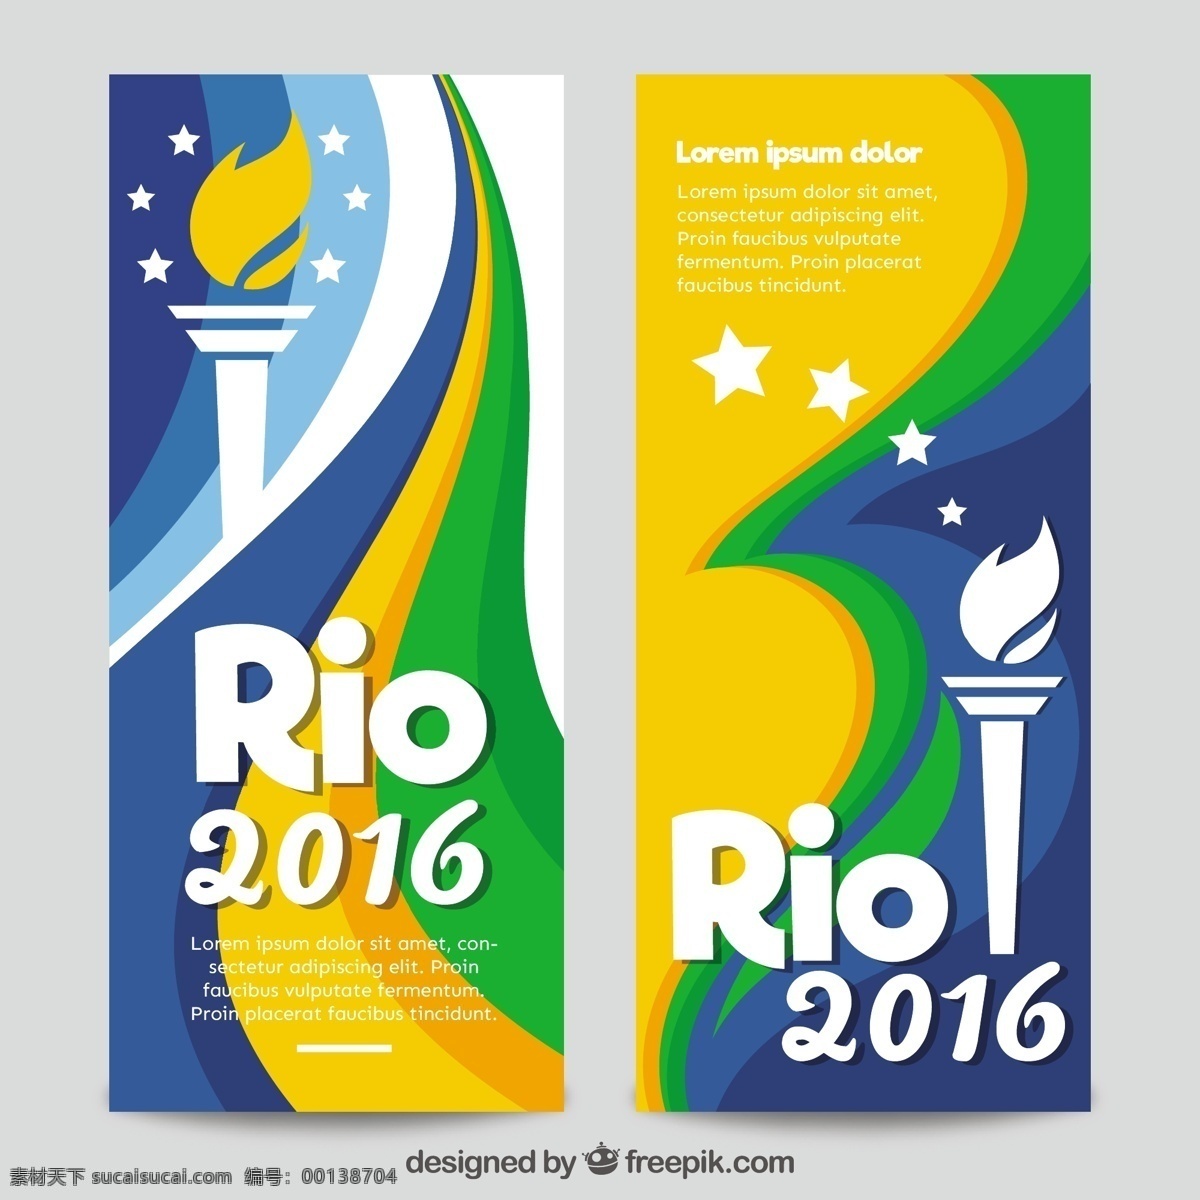 里约 2016 巴西 奥运会 横幅 火炬 矢量图 旗下 夏季体育 健身旗网 活动2016 健康 运动训练 rio里约 巴西奥运会 里约热内卢 夏季奥运会 黄色